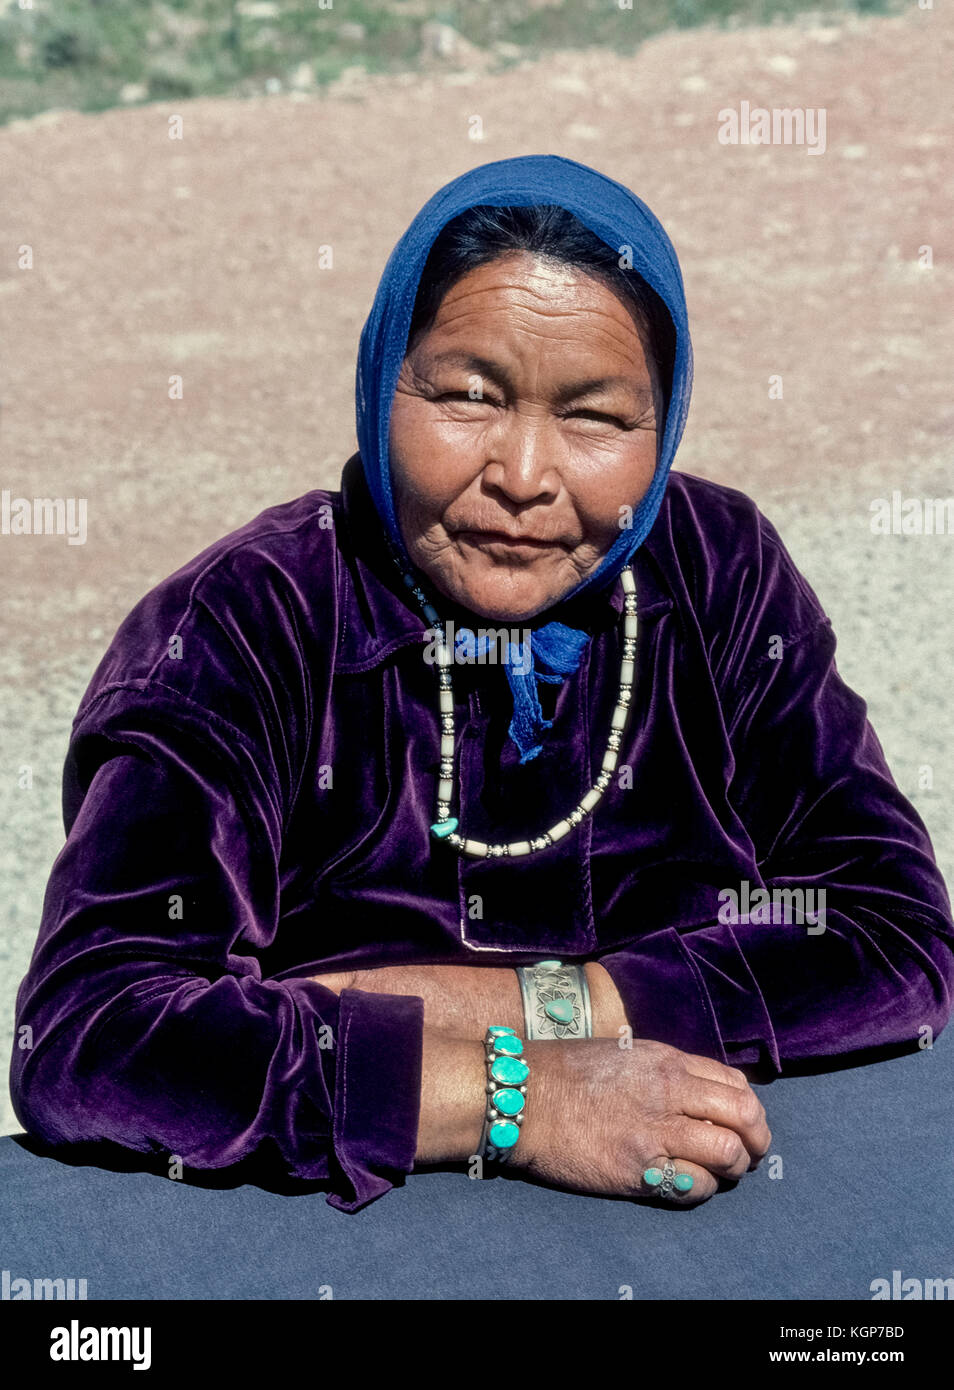 Ein Navajo Indianerin, der Verkauf von Indischen Perlenketten am Straßenrand stellt für eine informelle Portrait in der Nähe von Cameron, Arizona, USA, Teil der Navajo Nation von rund 250.000 Indigene Völker, die in der Reservierung Gebiet, der sich über mehr als 27.400 km2 (70965 km2) im Südwesten der Vereinigten Staaten leben. Stockfoto